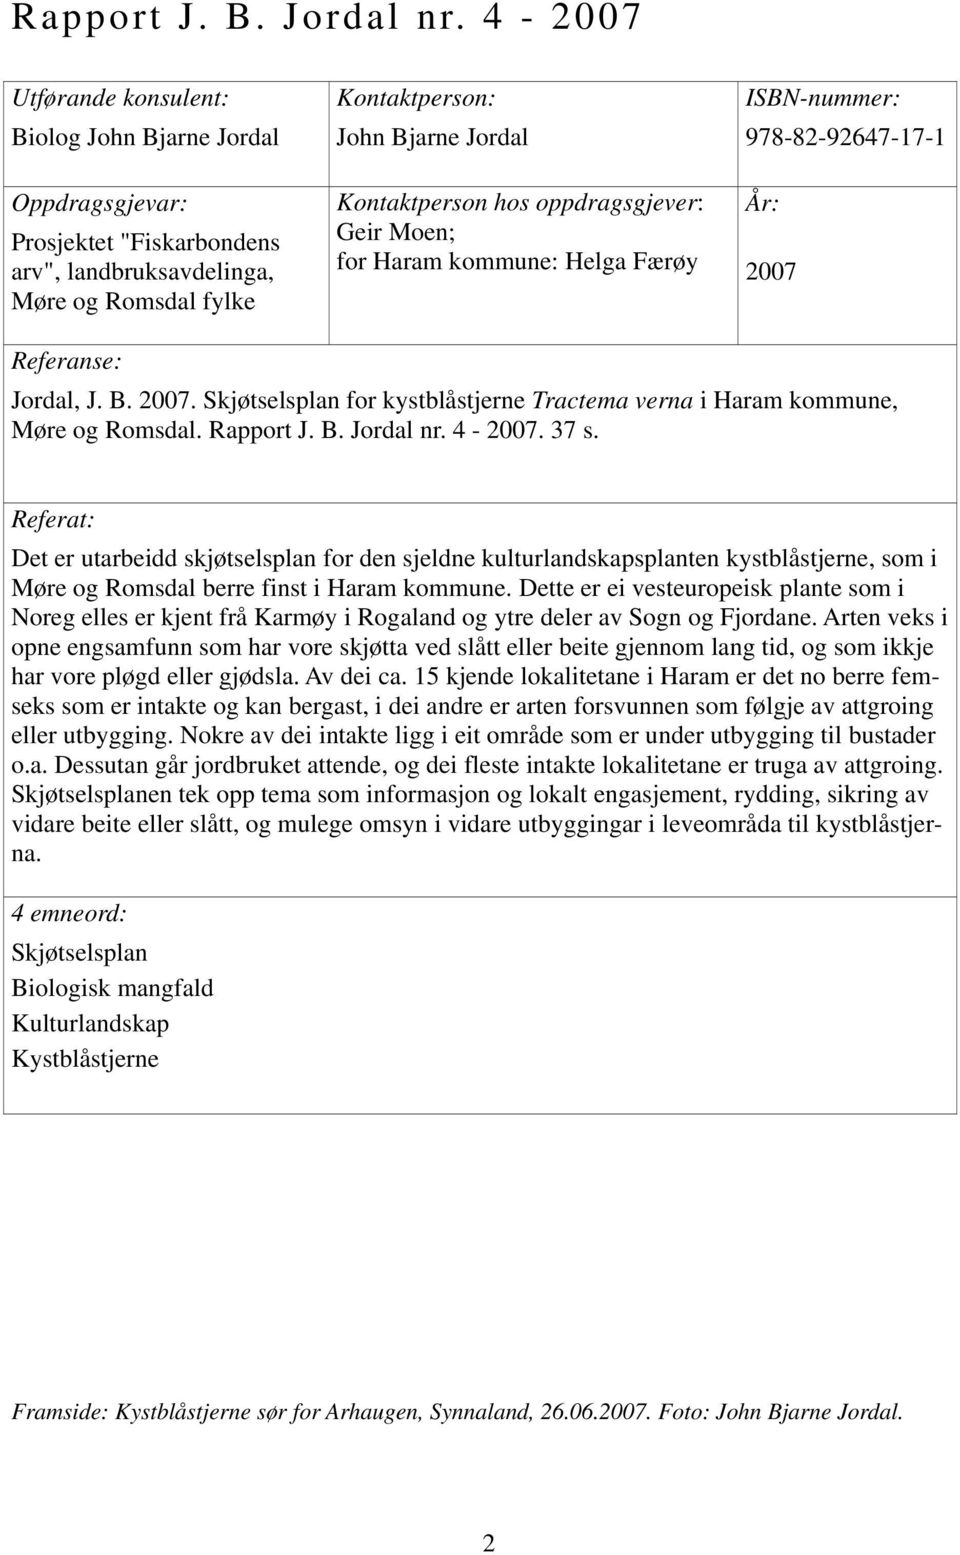 oppdragsgjever: Geir Moen; for Haram kommune: Helga Færøy ISBN-nummer: 978-82-92647-17-1 År: 2007 Referanse: Jordal, J. B. 2007. Skjøtselsplan for kystblåstjerne Tractema verna i Haram kommune, Møre og Romsdal.